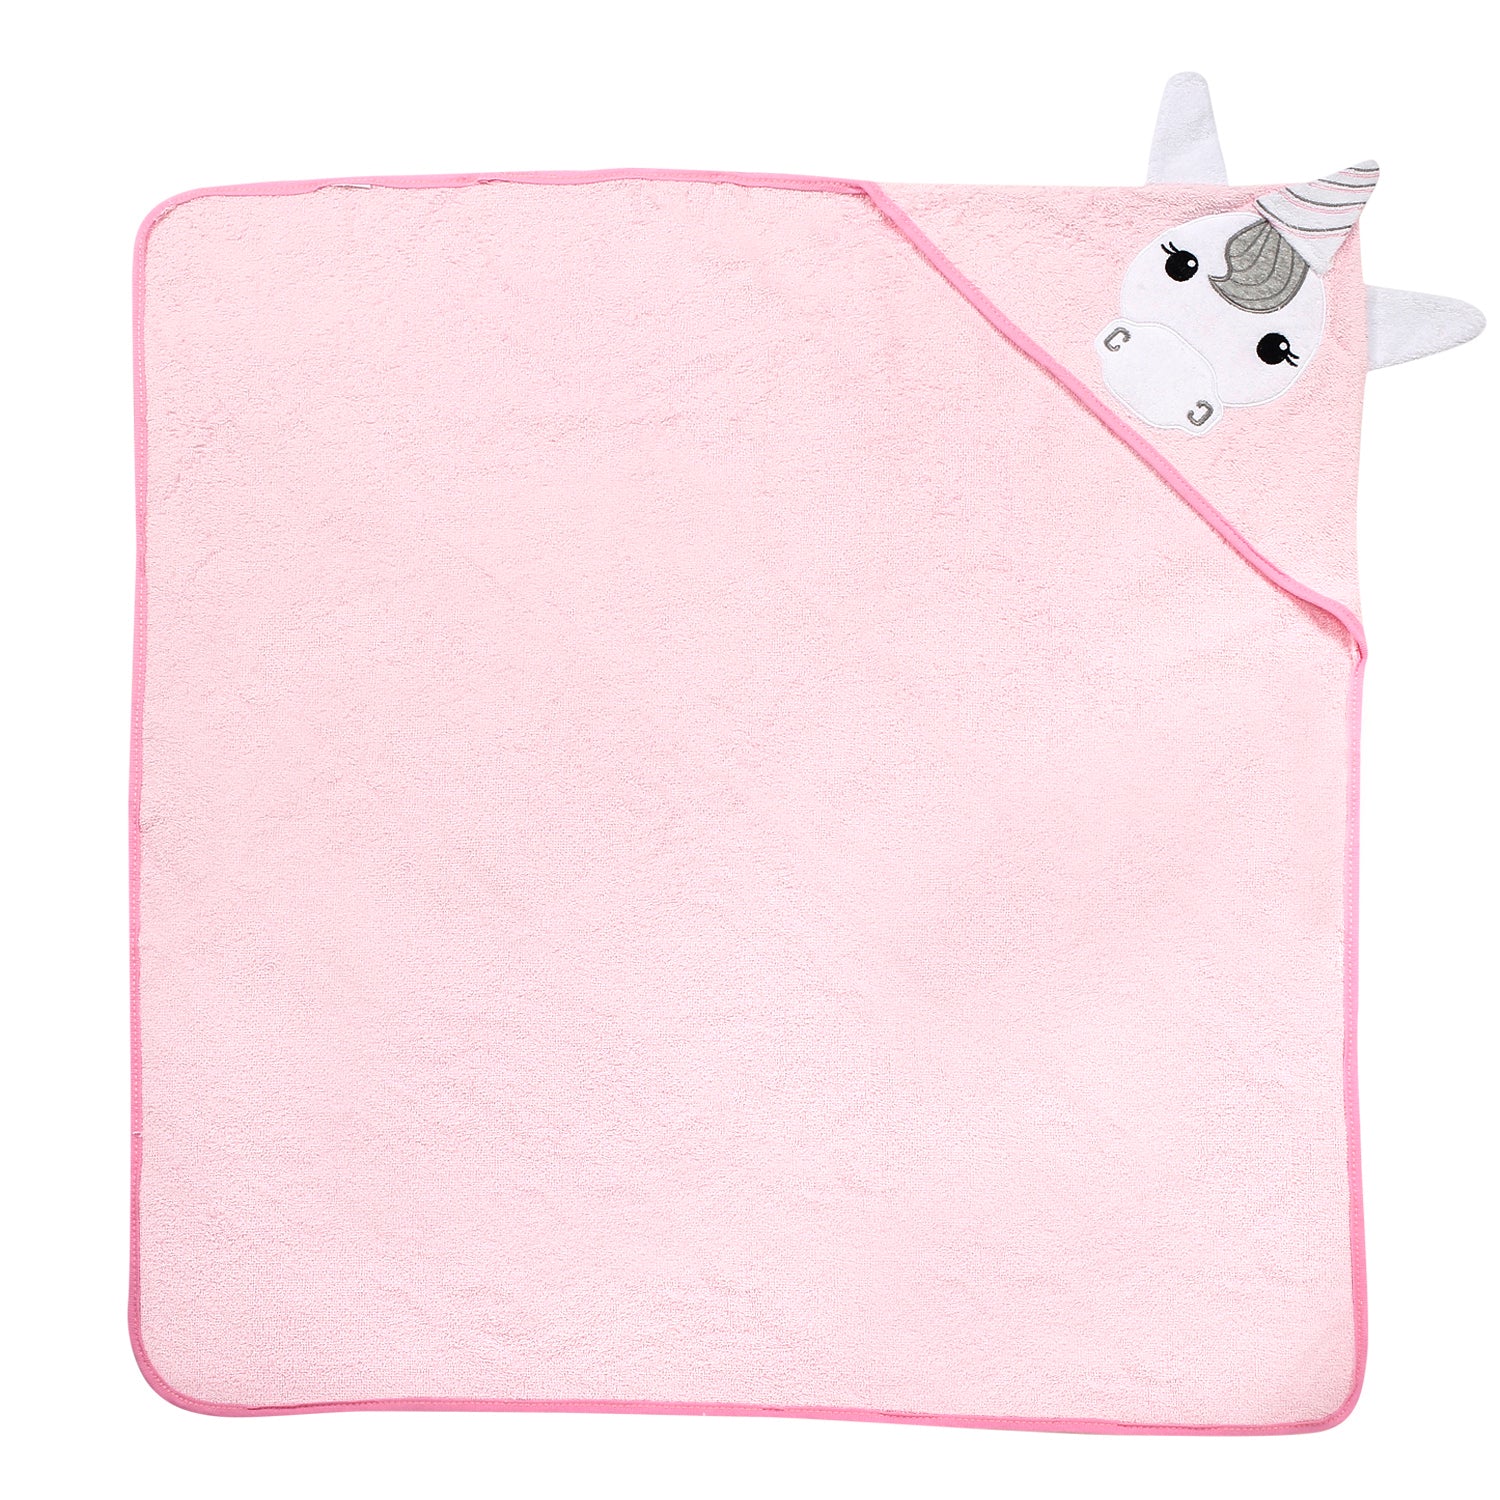 Flying Unicorn Pink Unicorn Hooded Towel